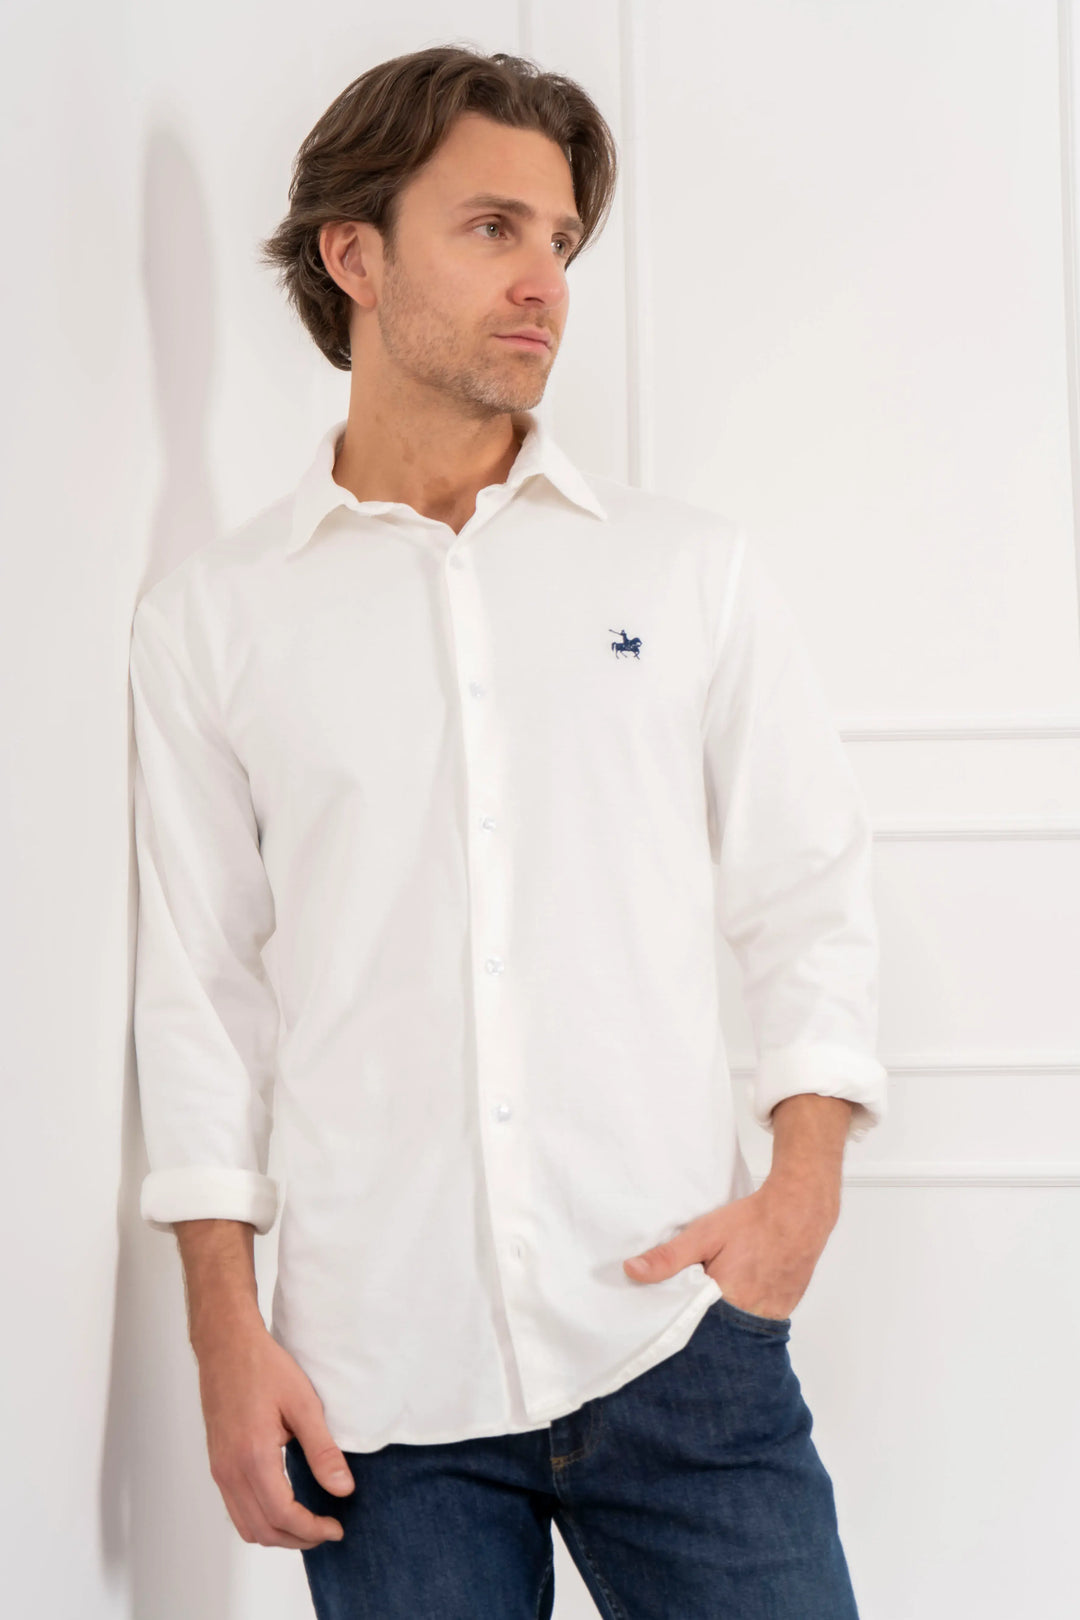 Camisa hombre manga larga tejido pique blanca. textura en relieve y suavidad excepcional. Ideal para looks casuales informales.